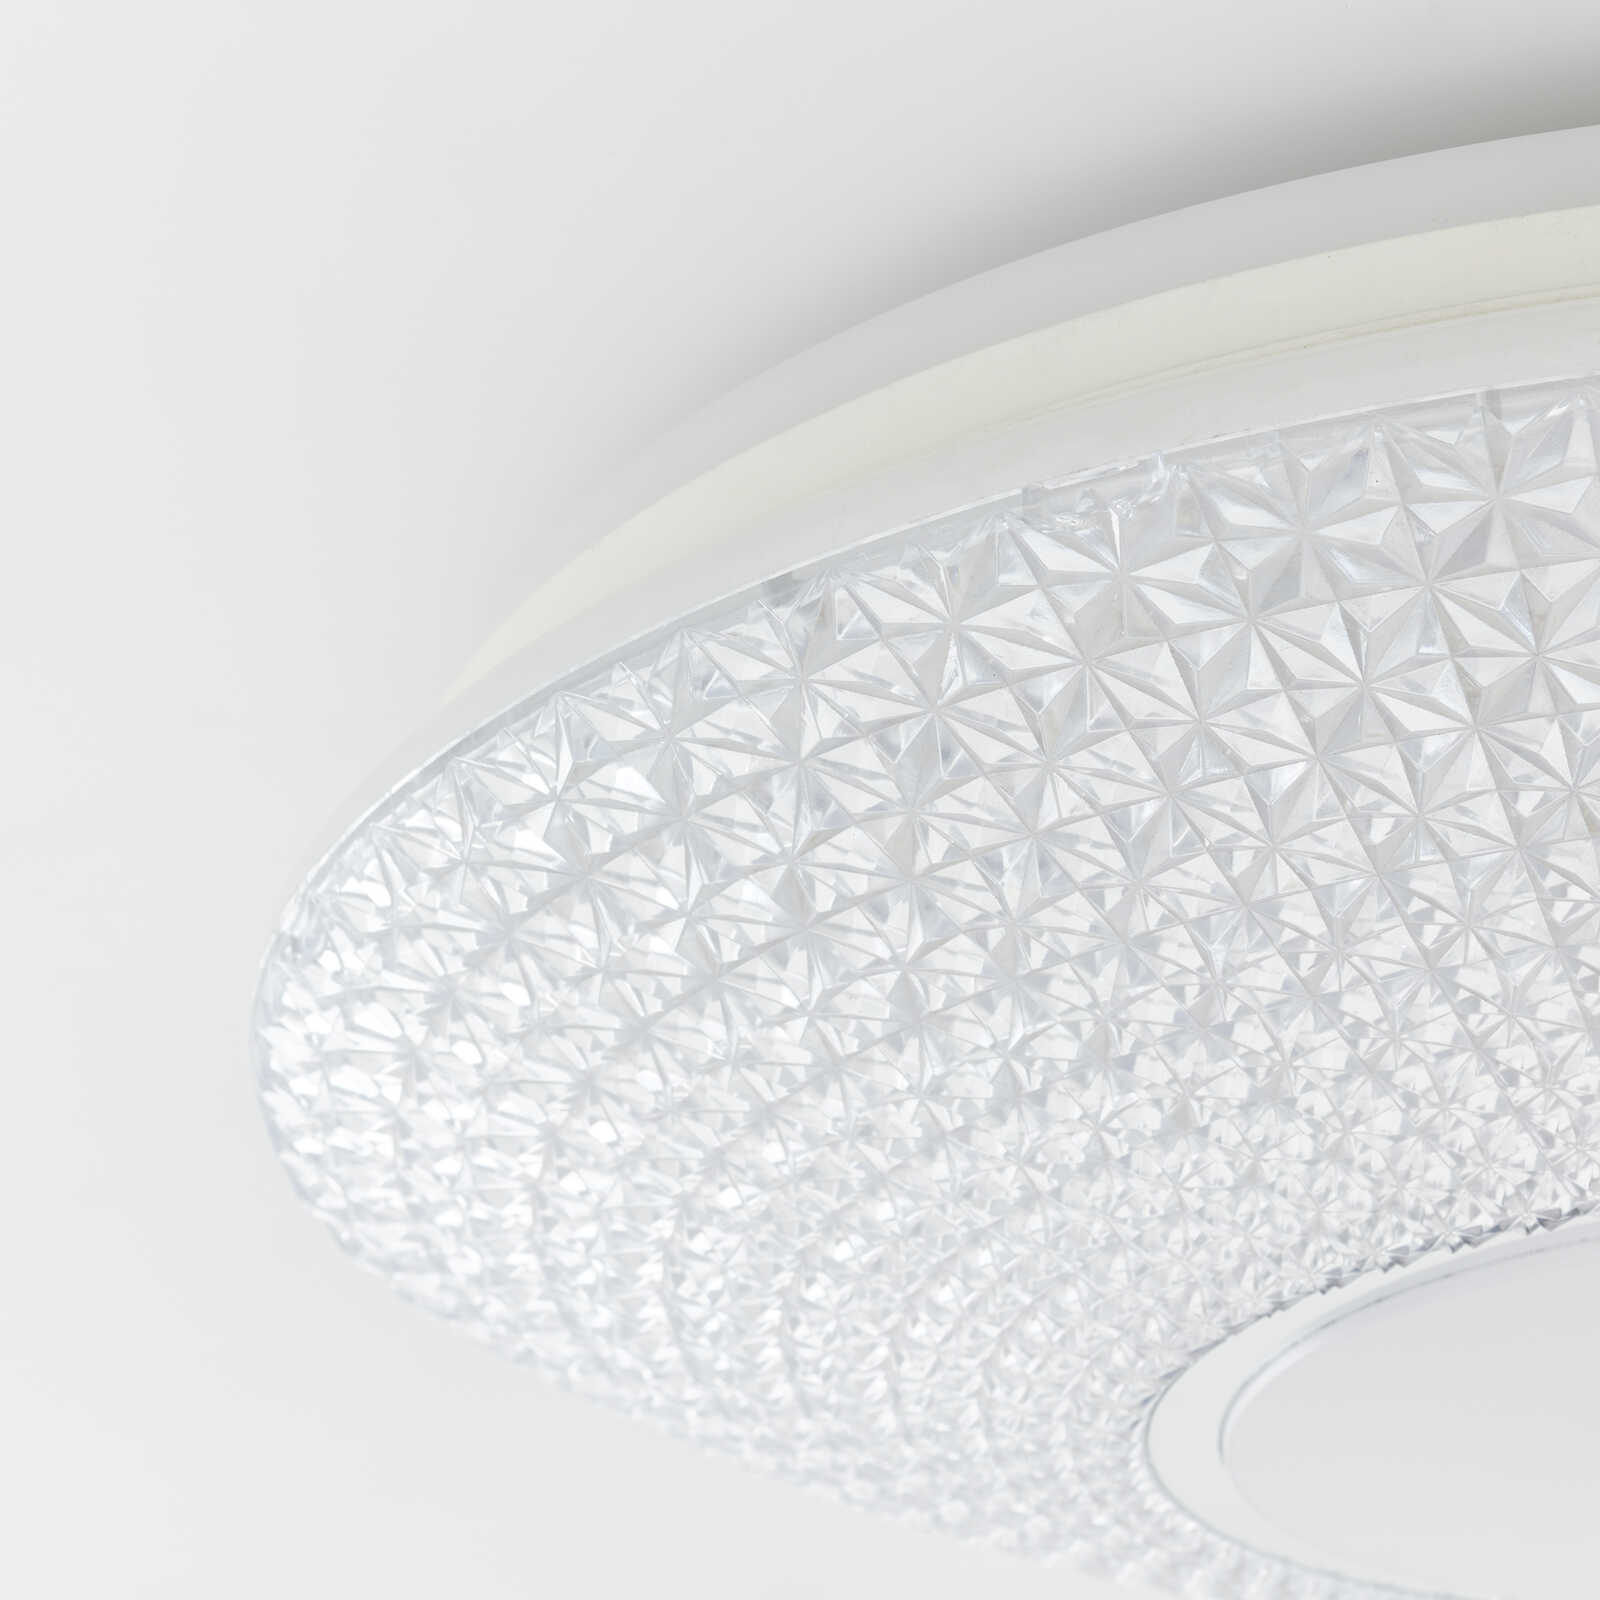             Kunststof plafondlamp - Leandra 2 - Wit
        